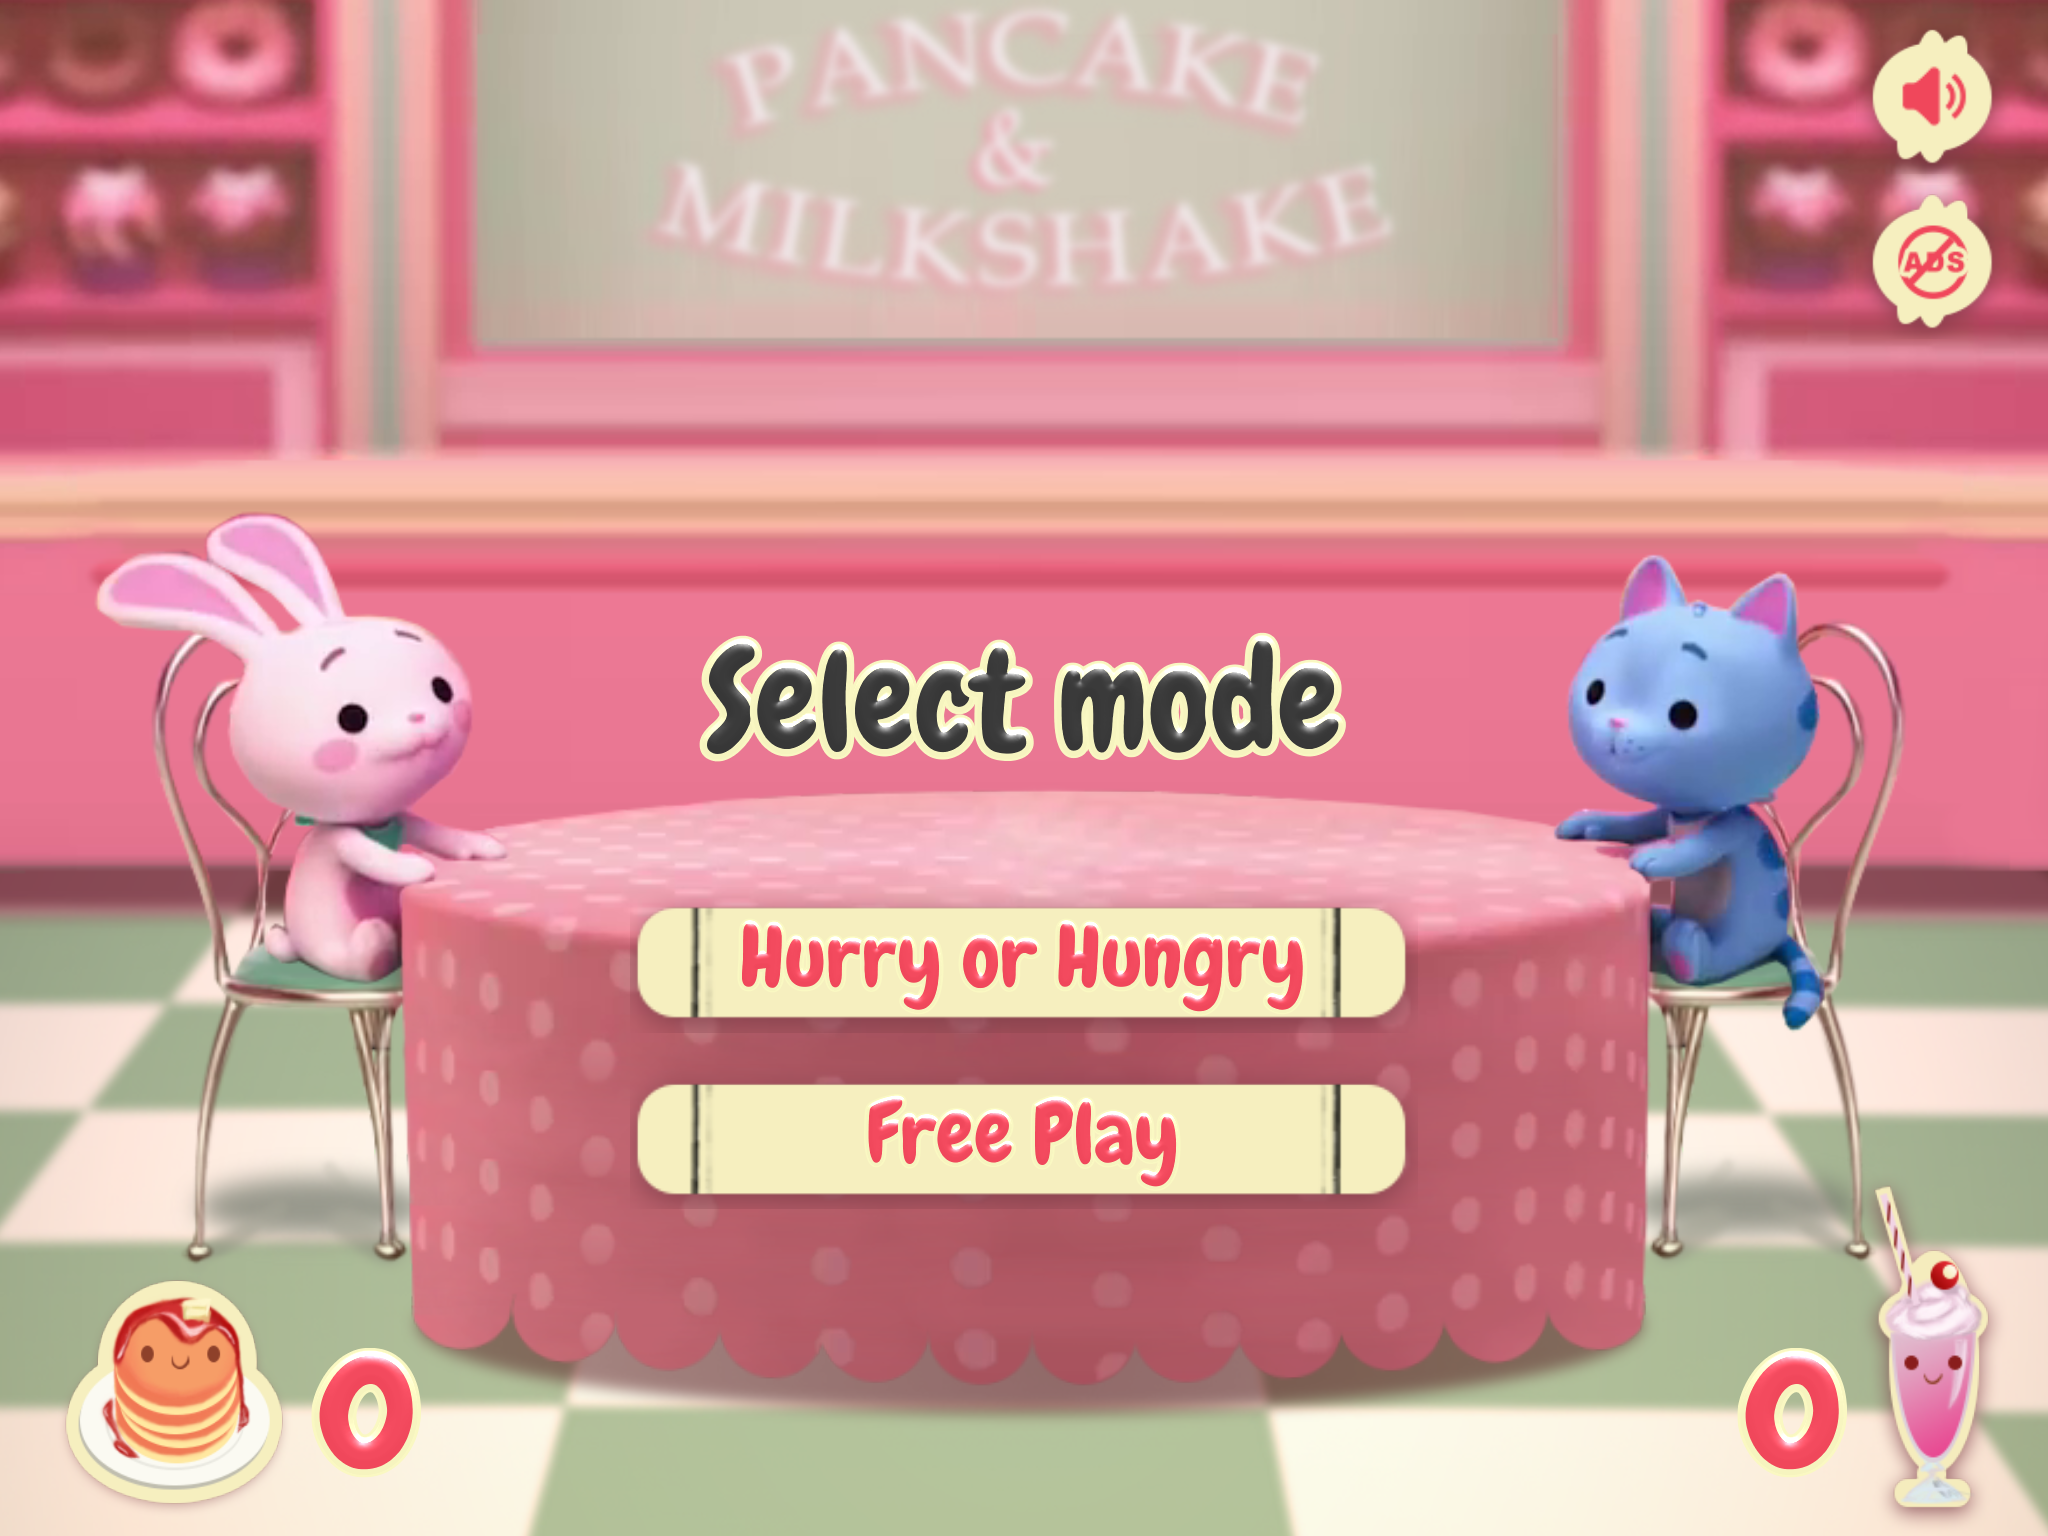 Screenshot 1 of Pancake dan Milkshake! 0.1